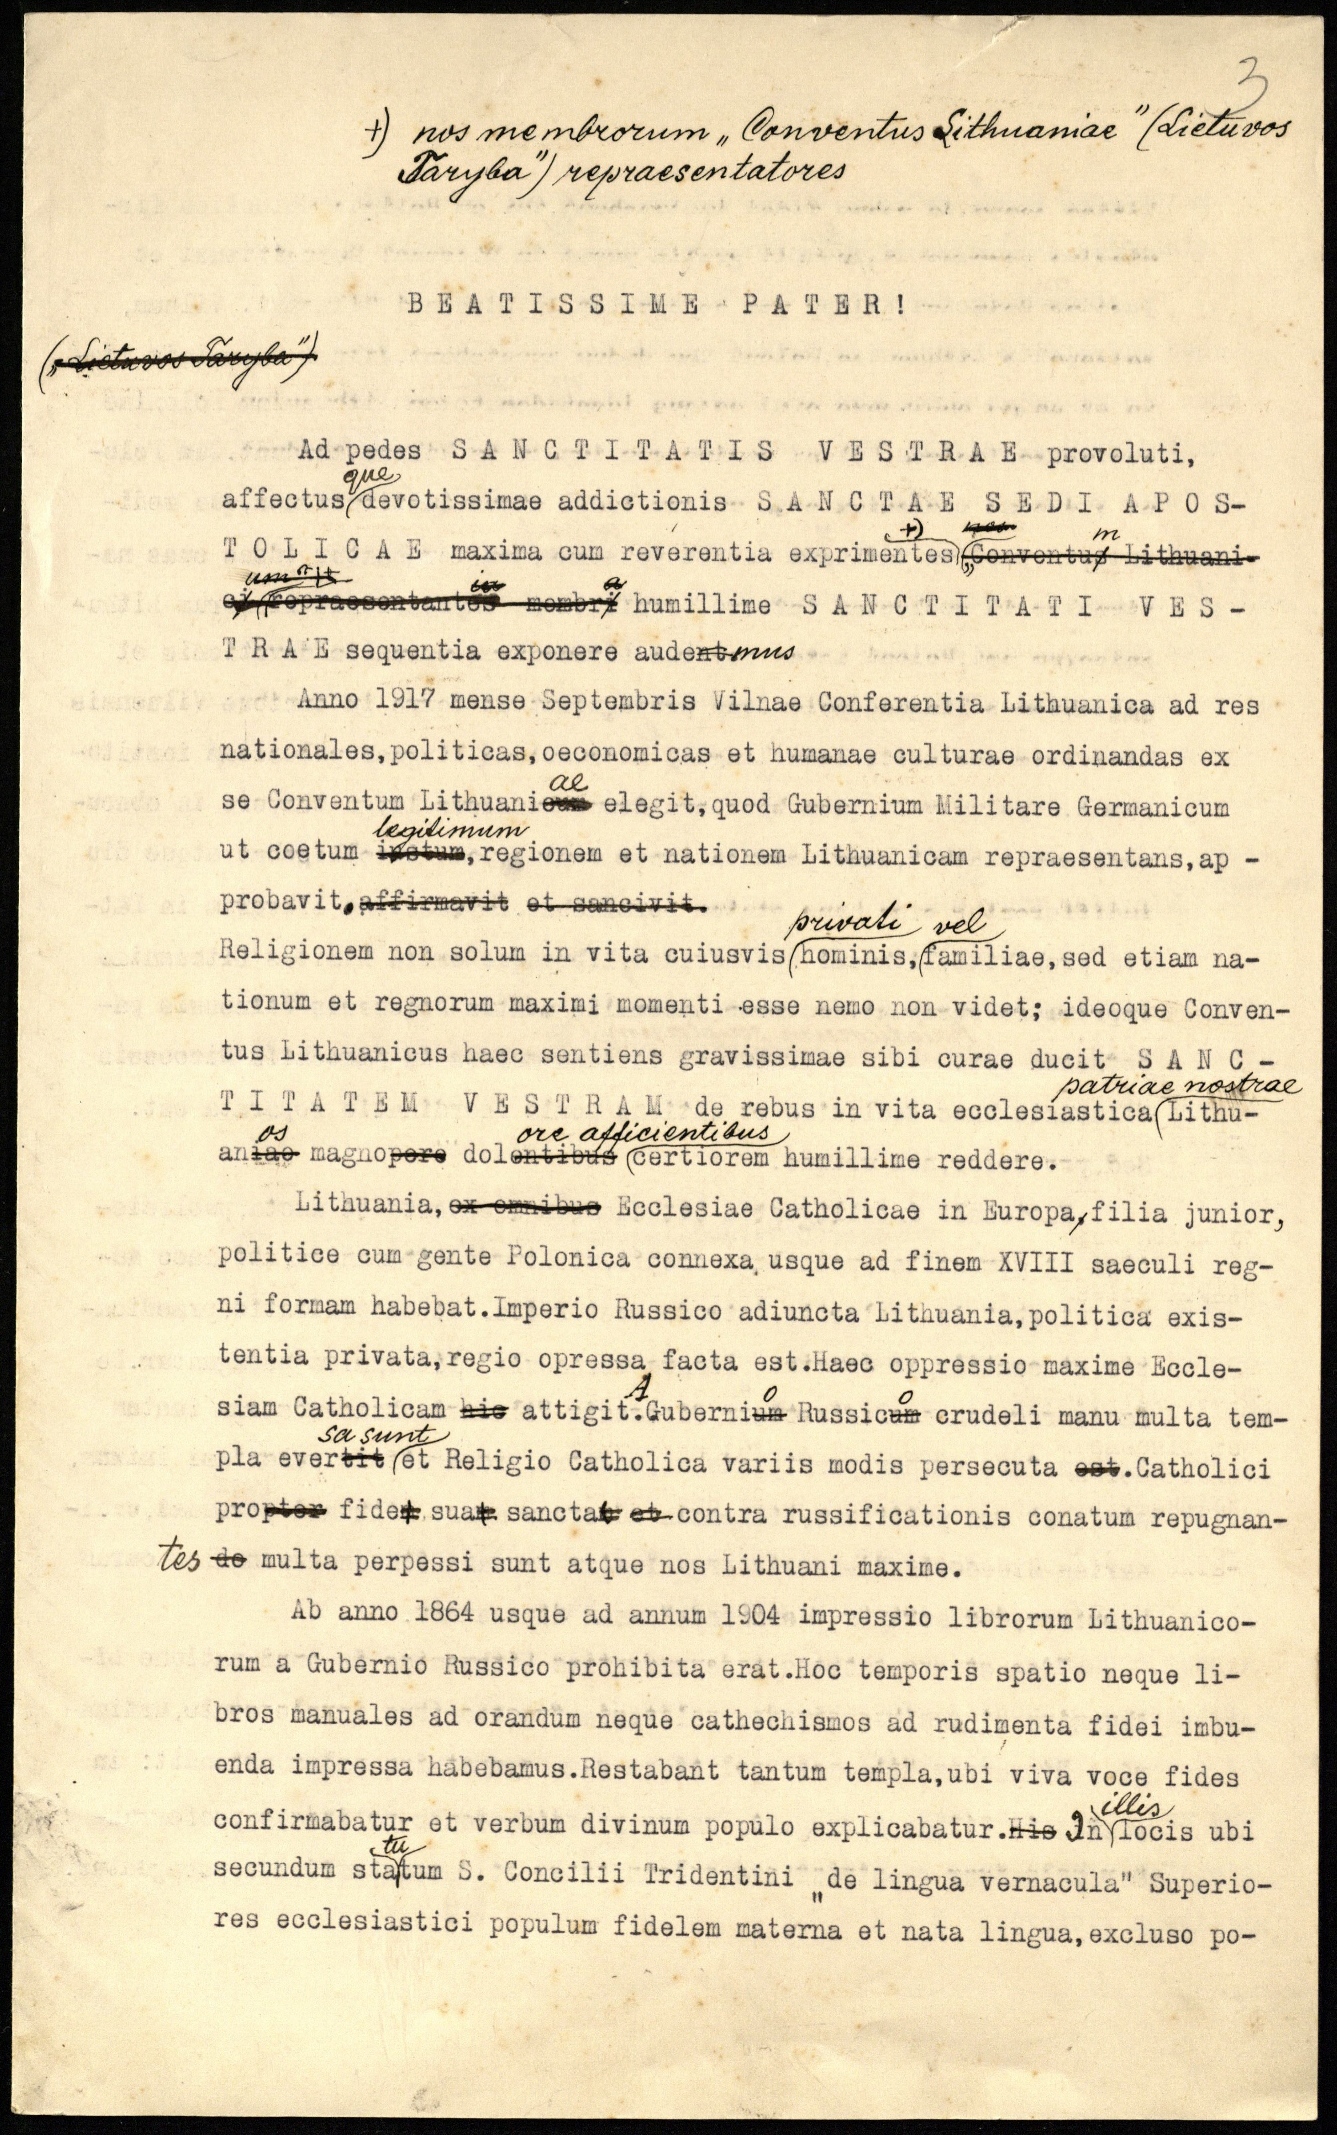 Popiežiui adresuoto Lietuvos Tarybos rašto dėl gyventojų lenkinimo per bažnyčią juodraštis. Vilnius, 1917 m. gruodžio mėn.